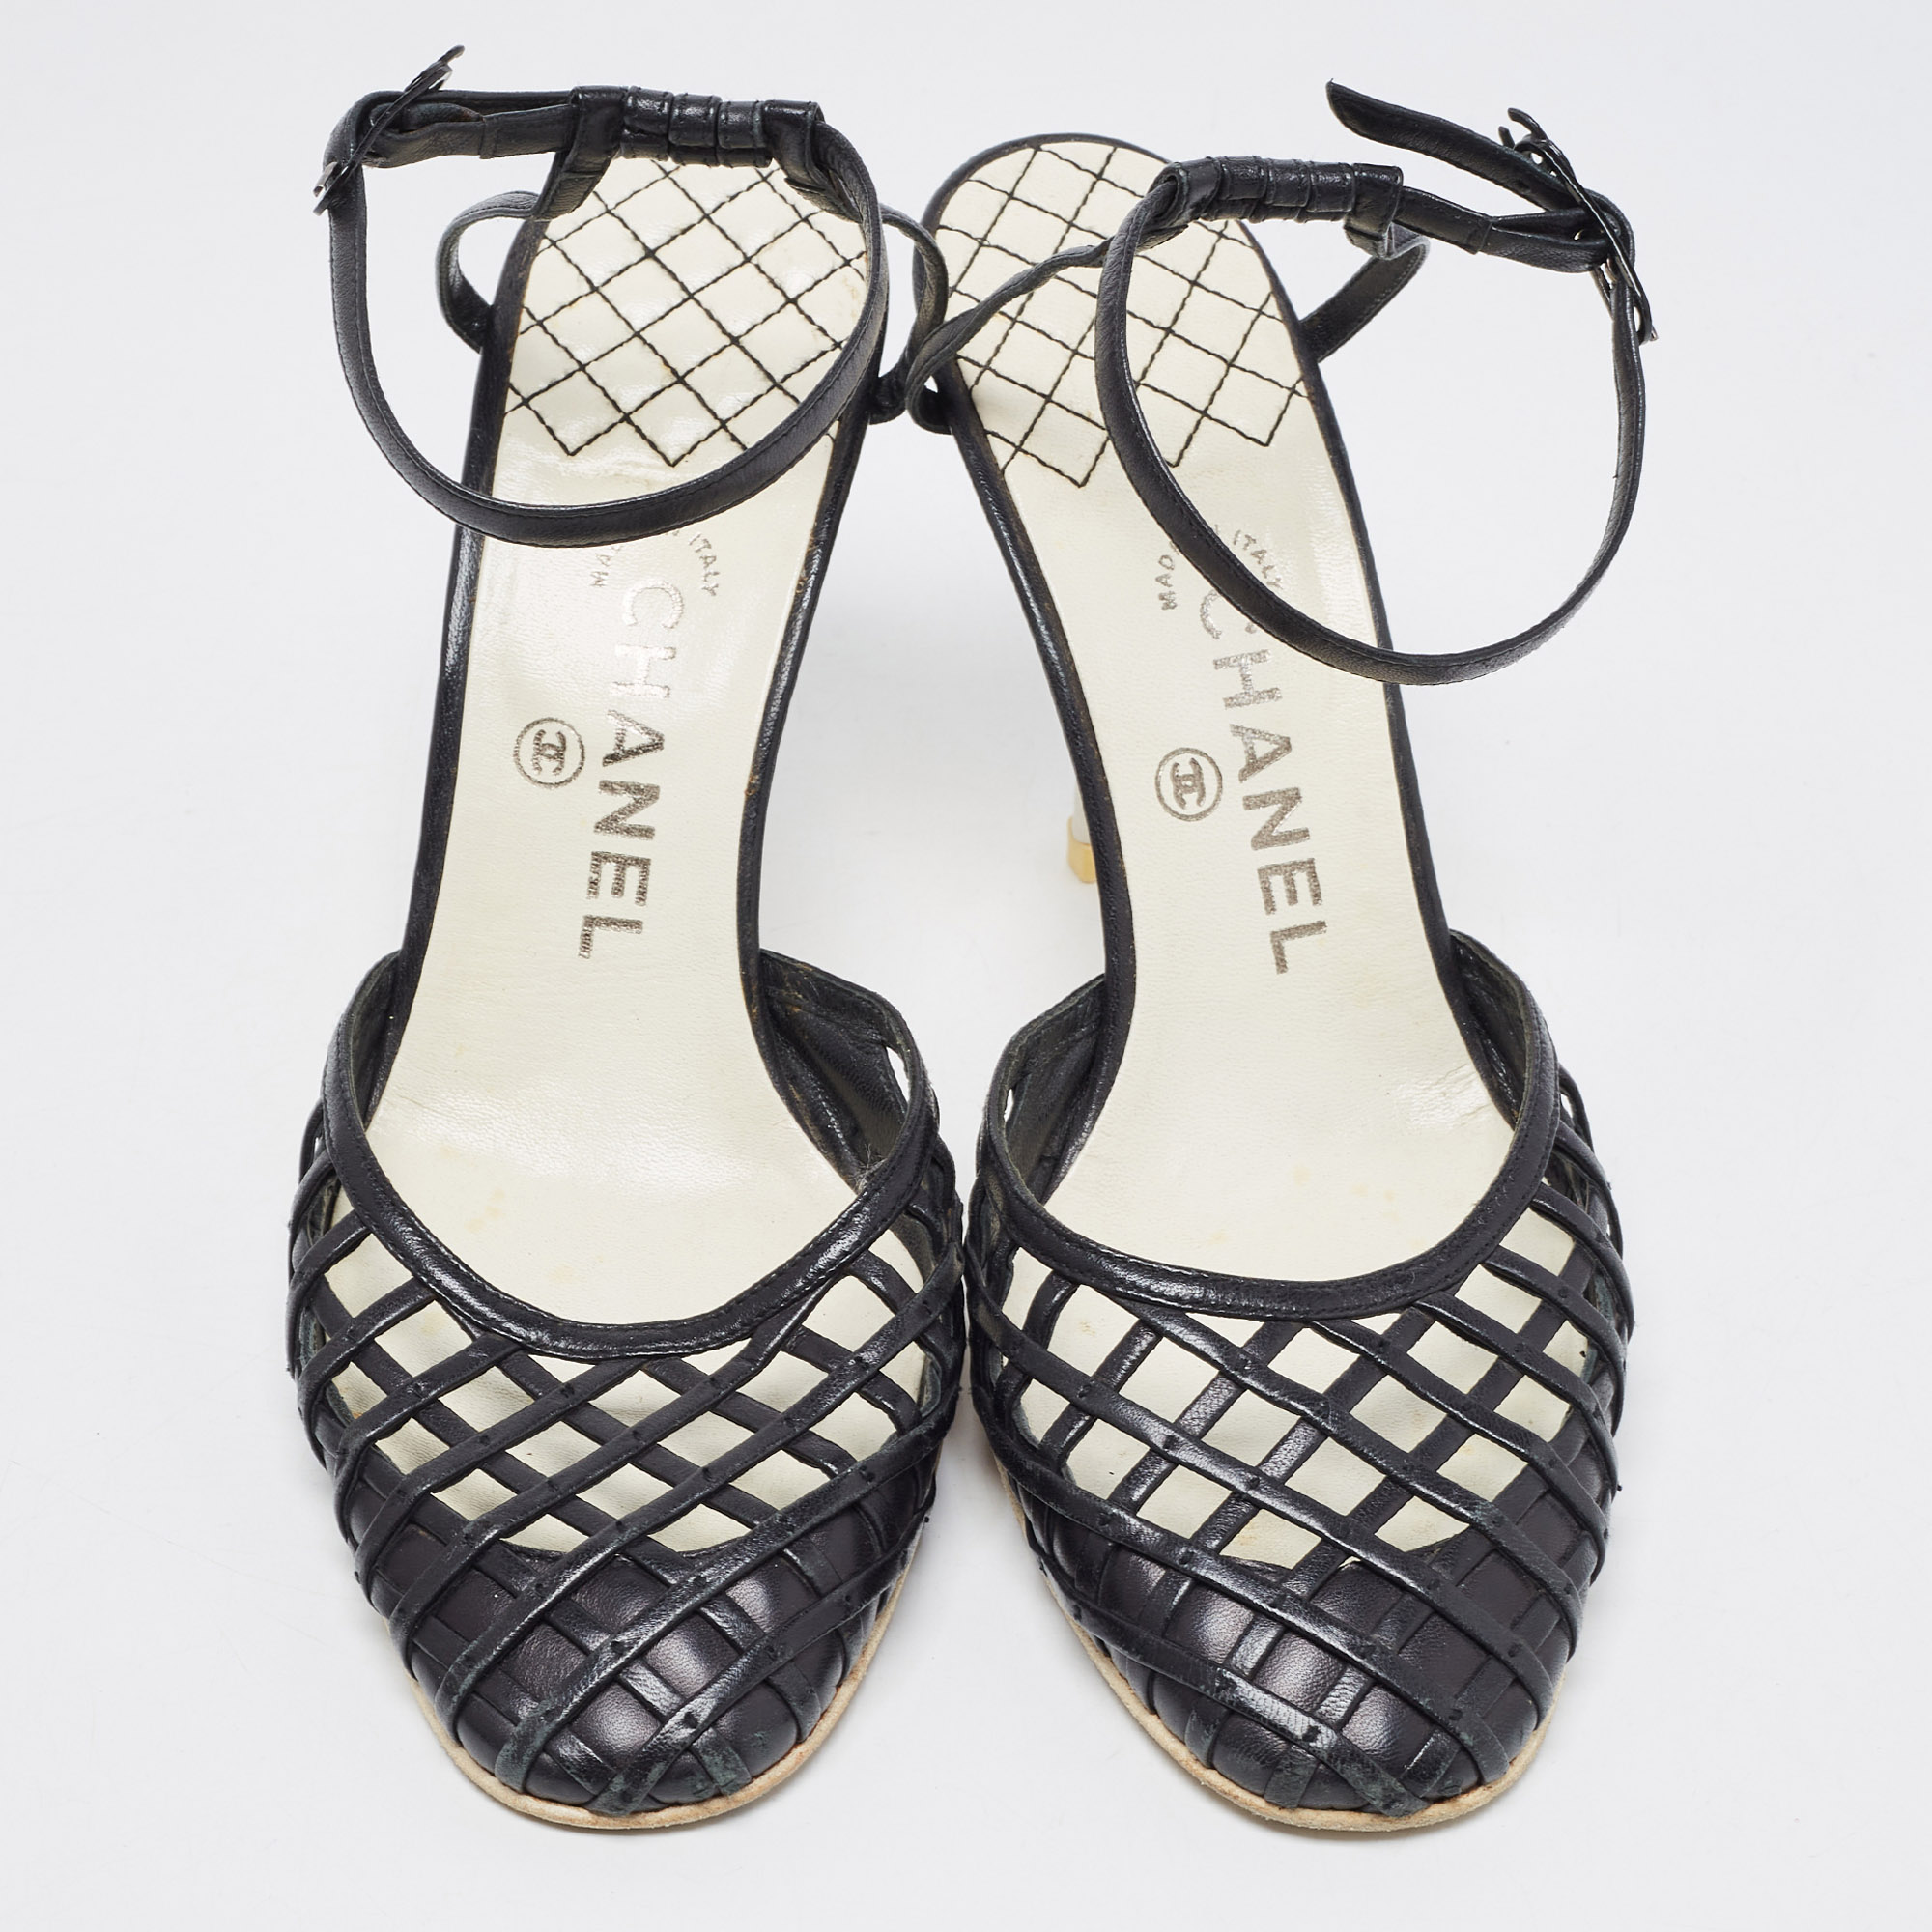 Chanel Black Leather CC Ankle Strap Pumps Size 39.5